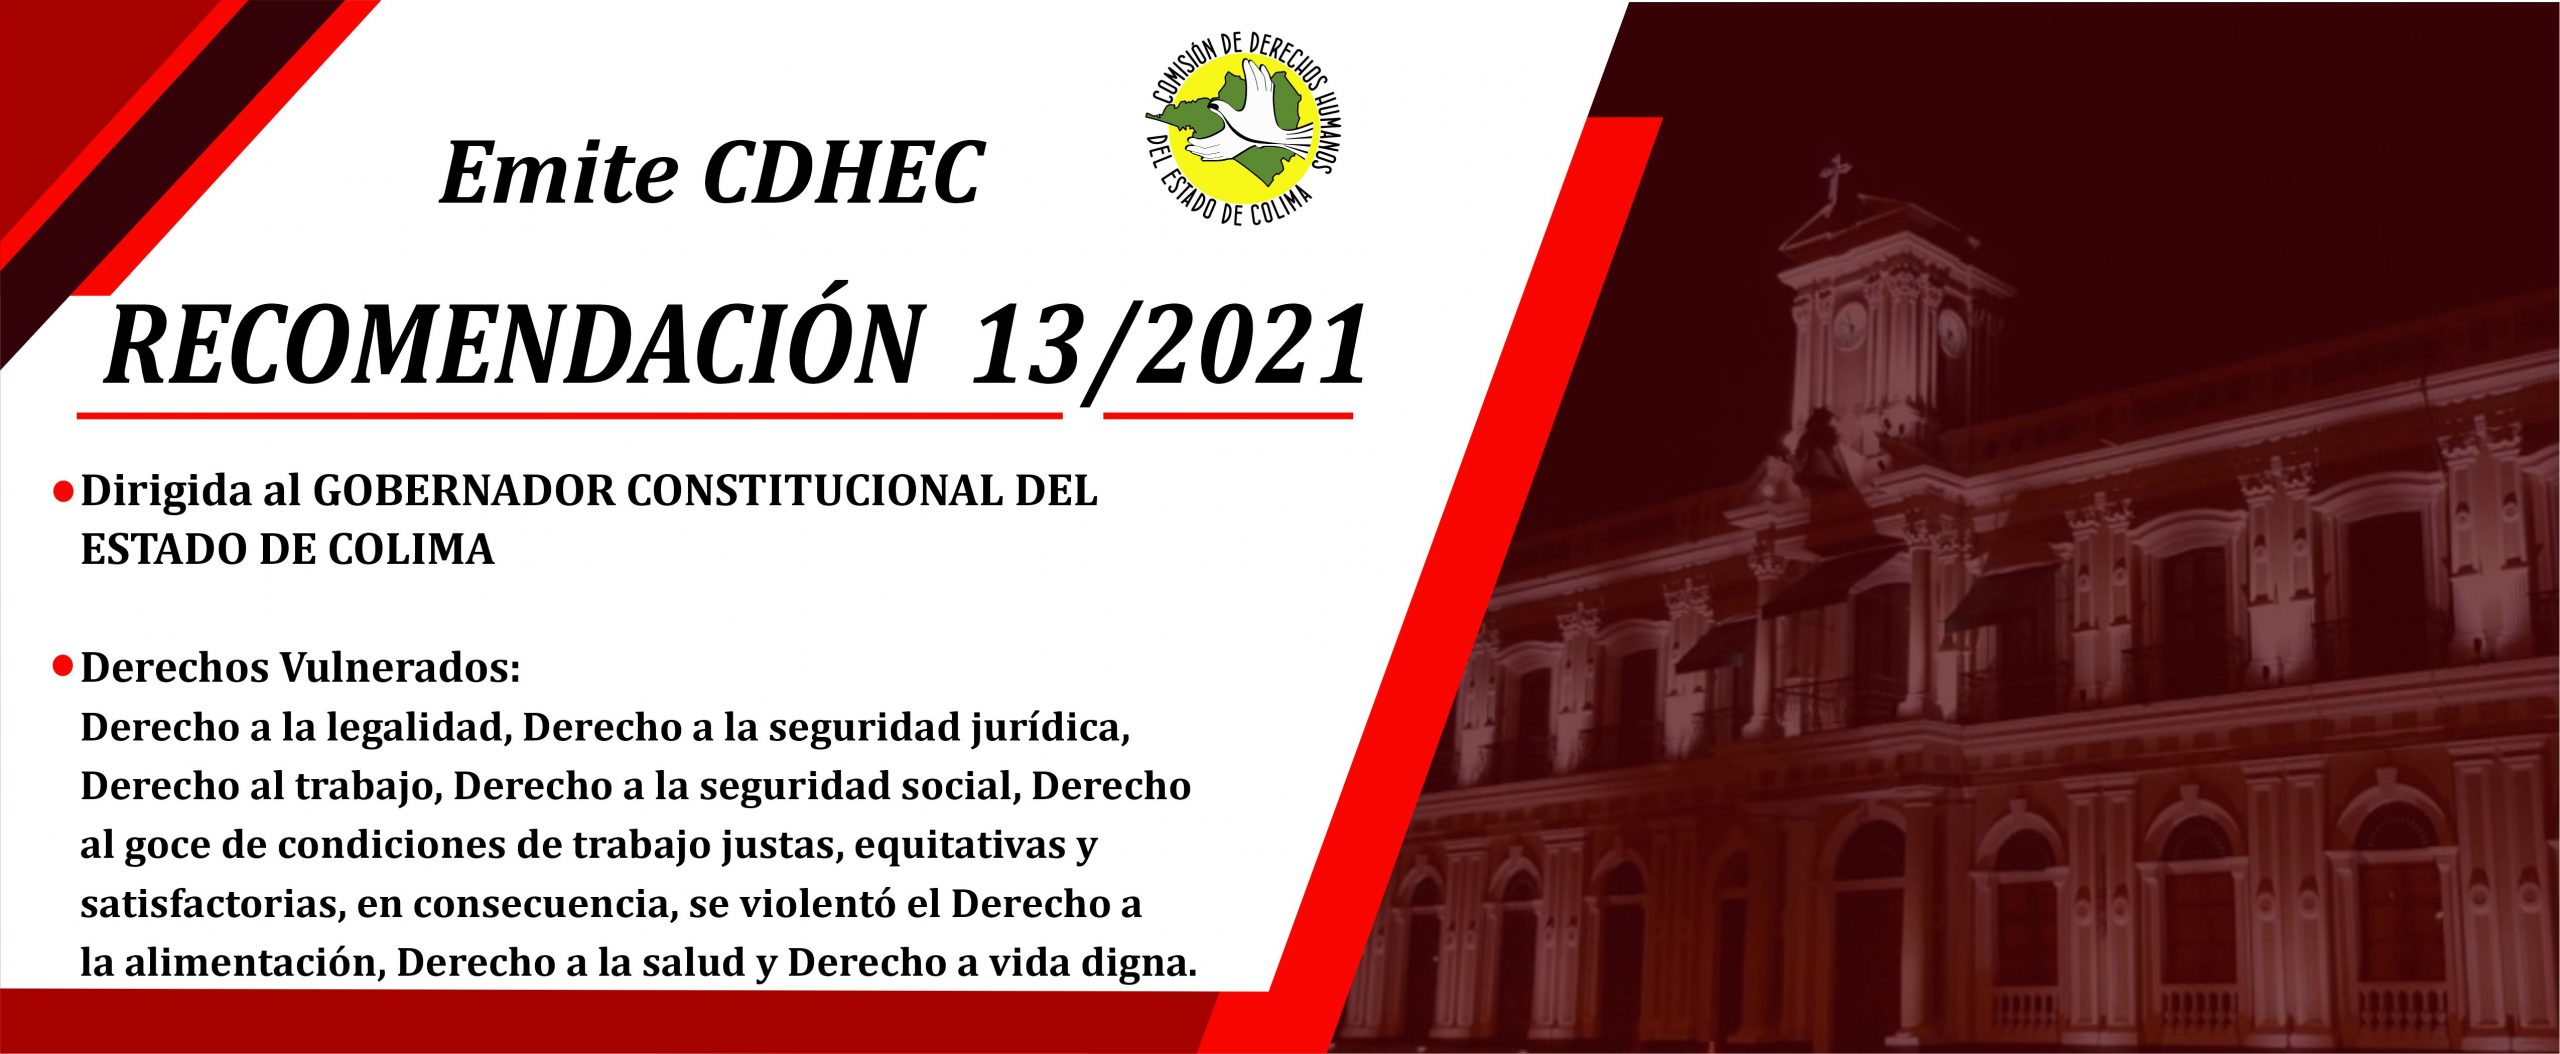 CDHEC emite Recomendación 13/2021